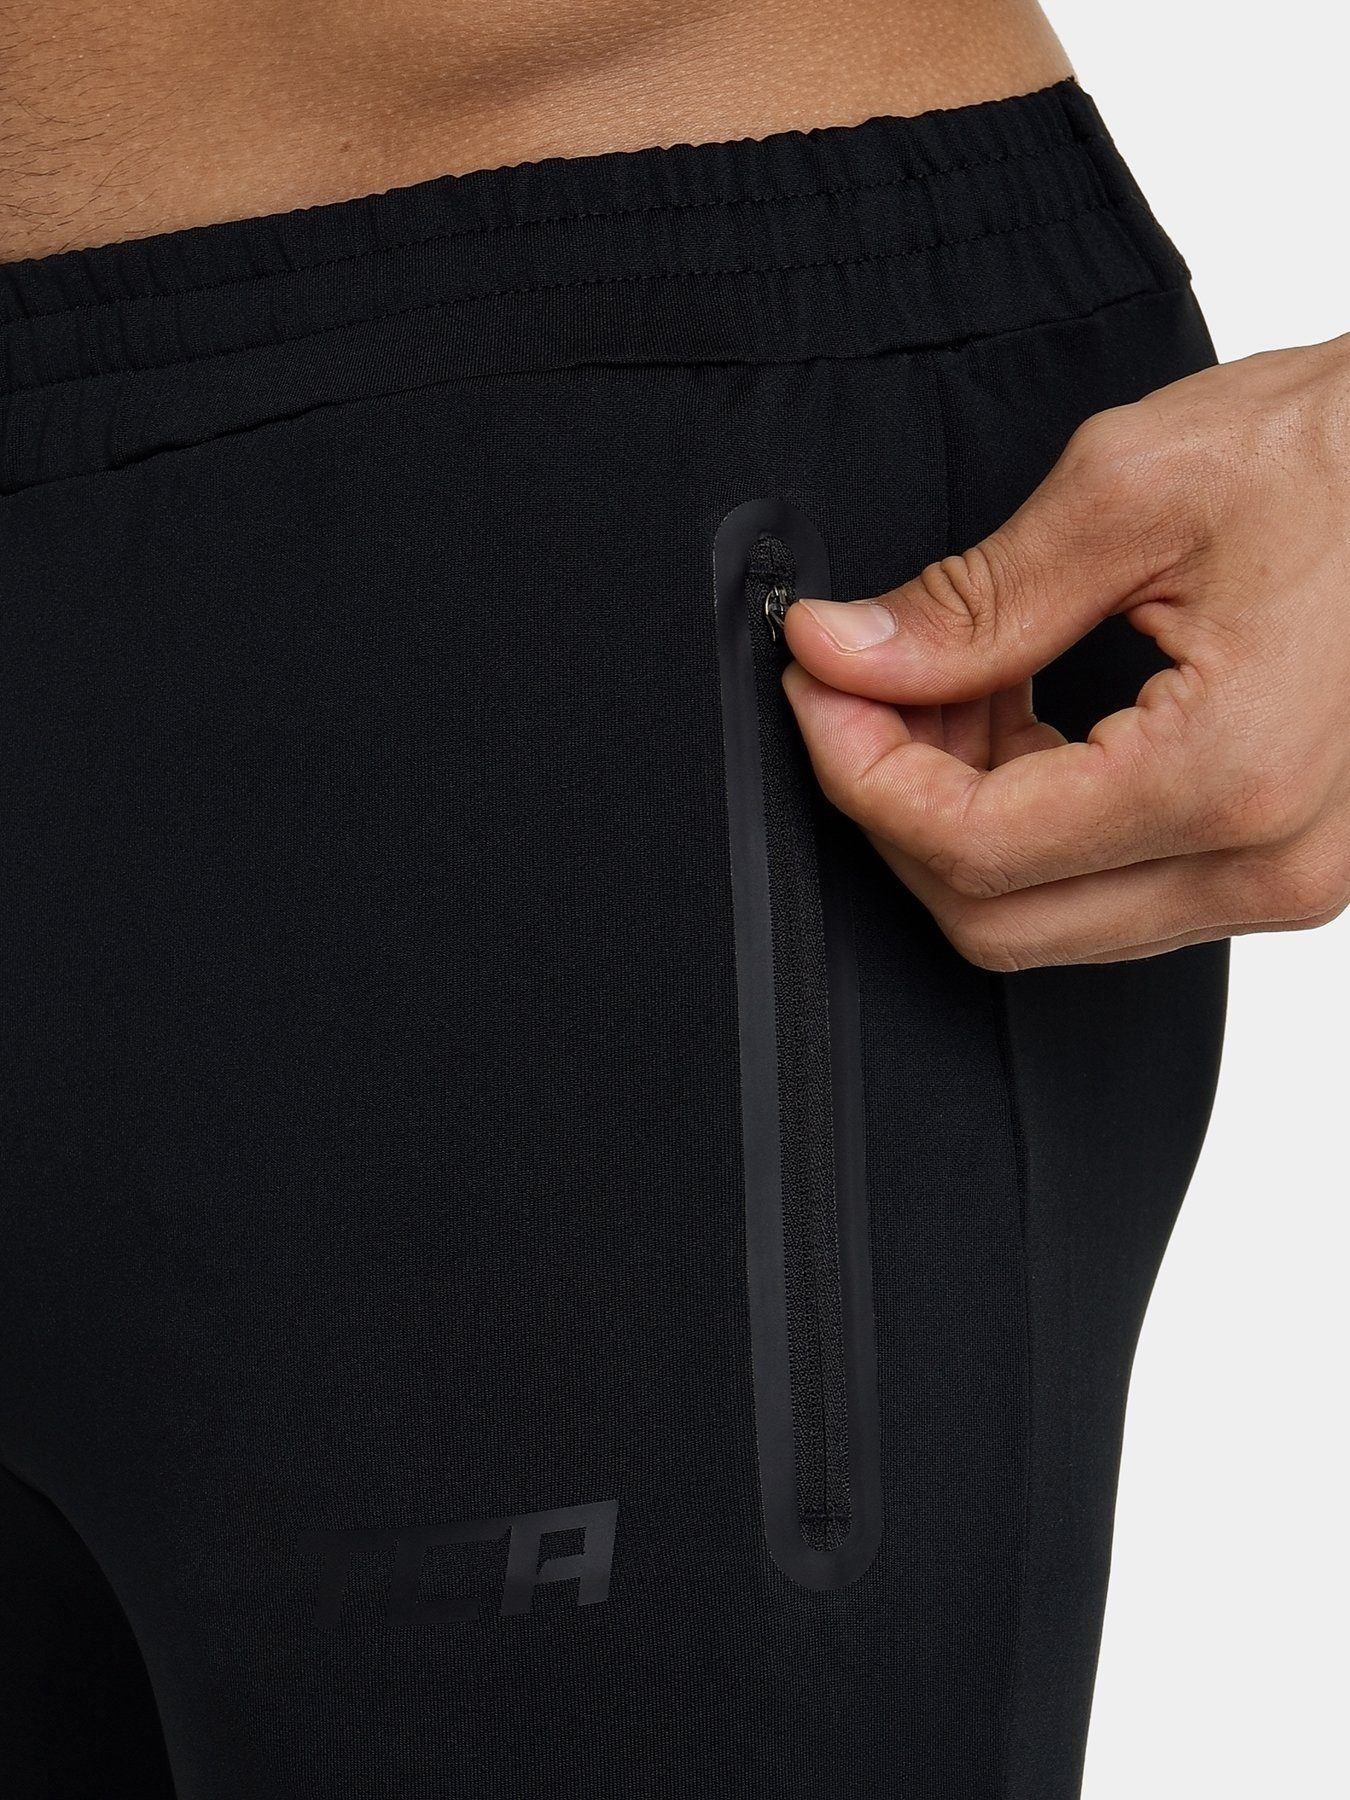 Mens Fashion Joggers Draw String Sports Sweat Pants Zipper Pockets  Inox  Wind